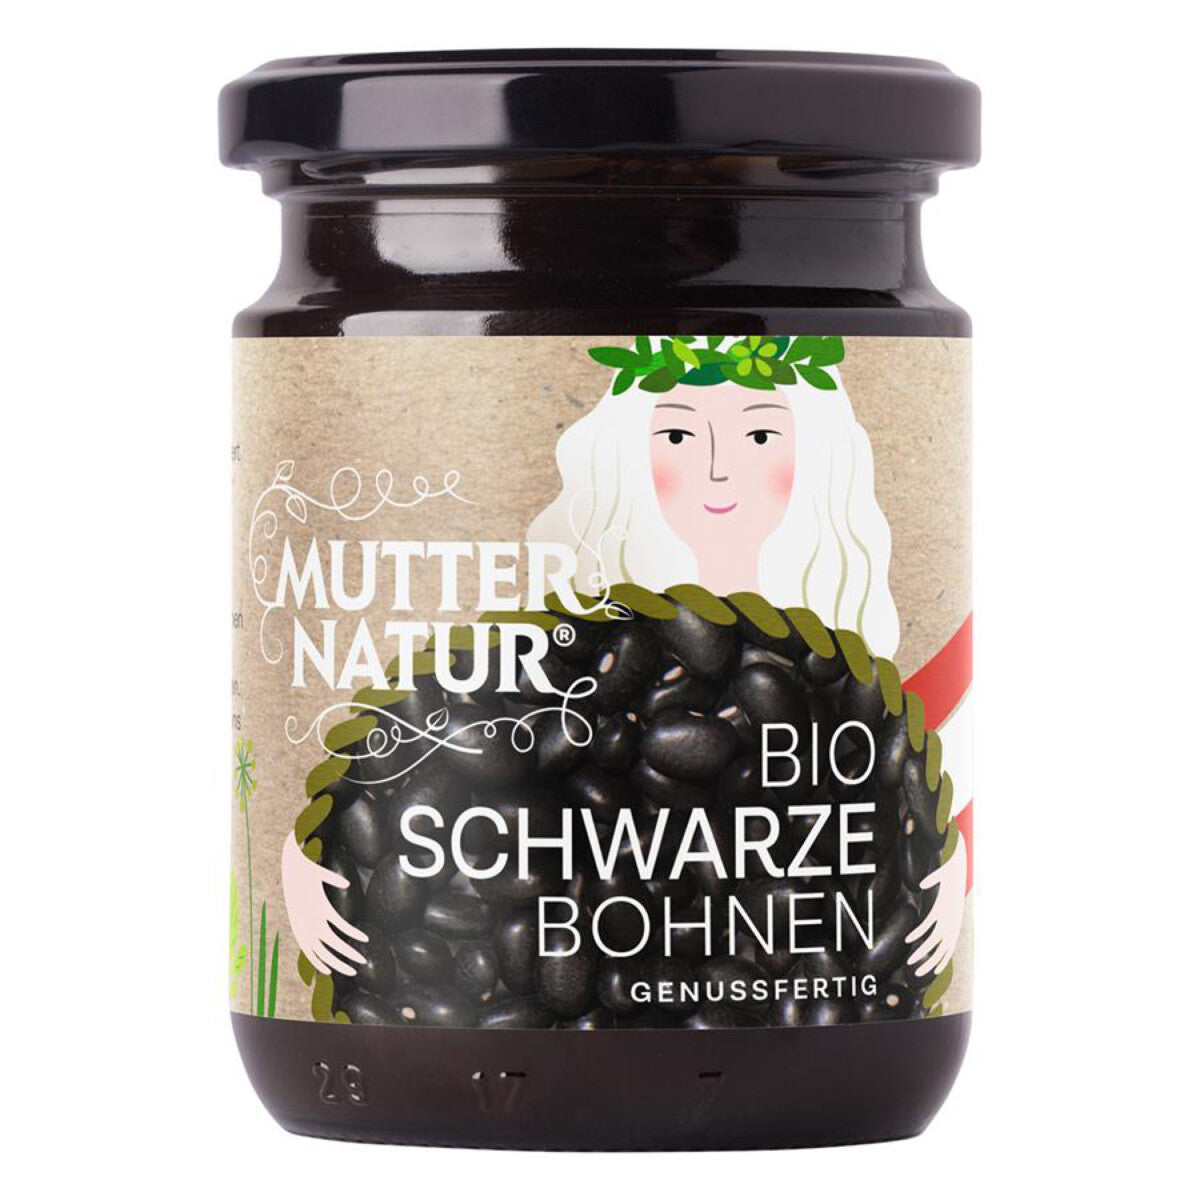 MUTTER NATUR Schwarze Bohnen genussfertig - 235 g